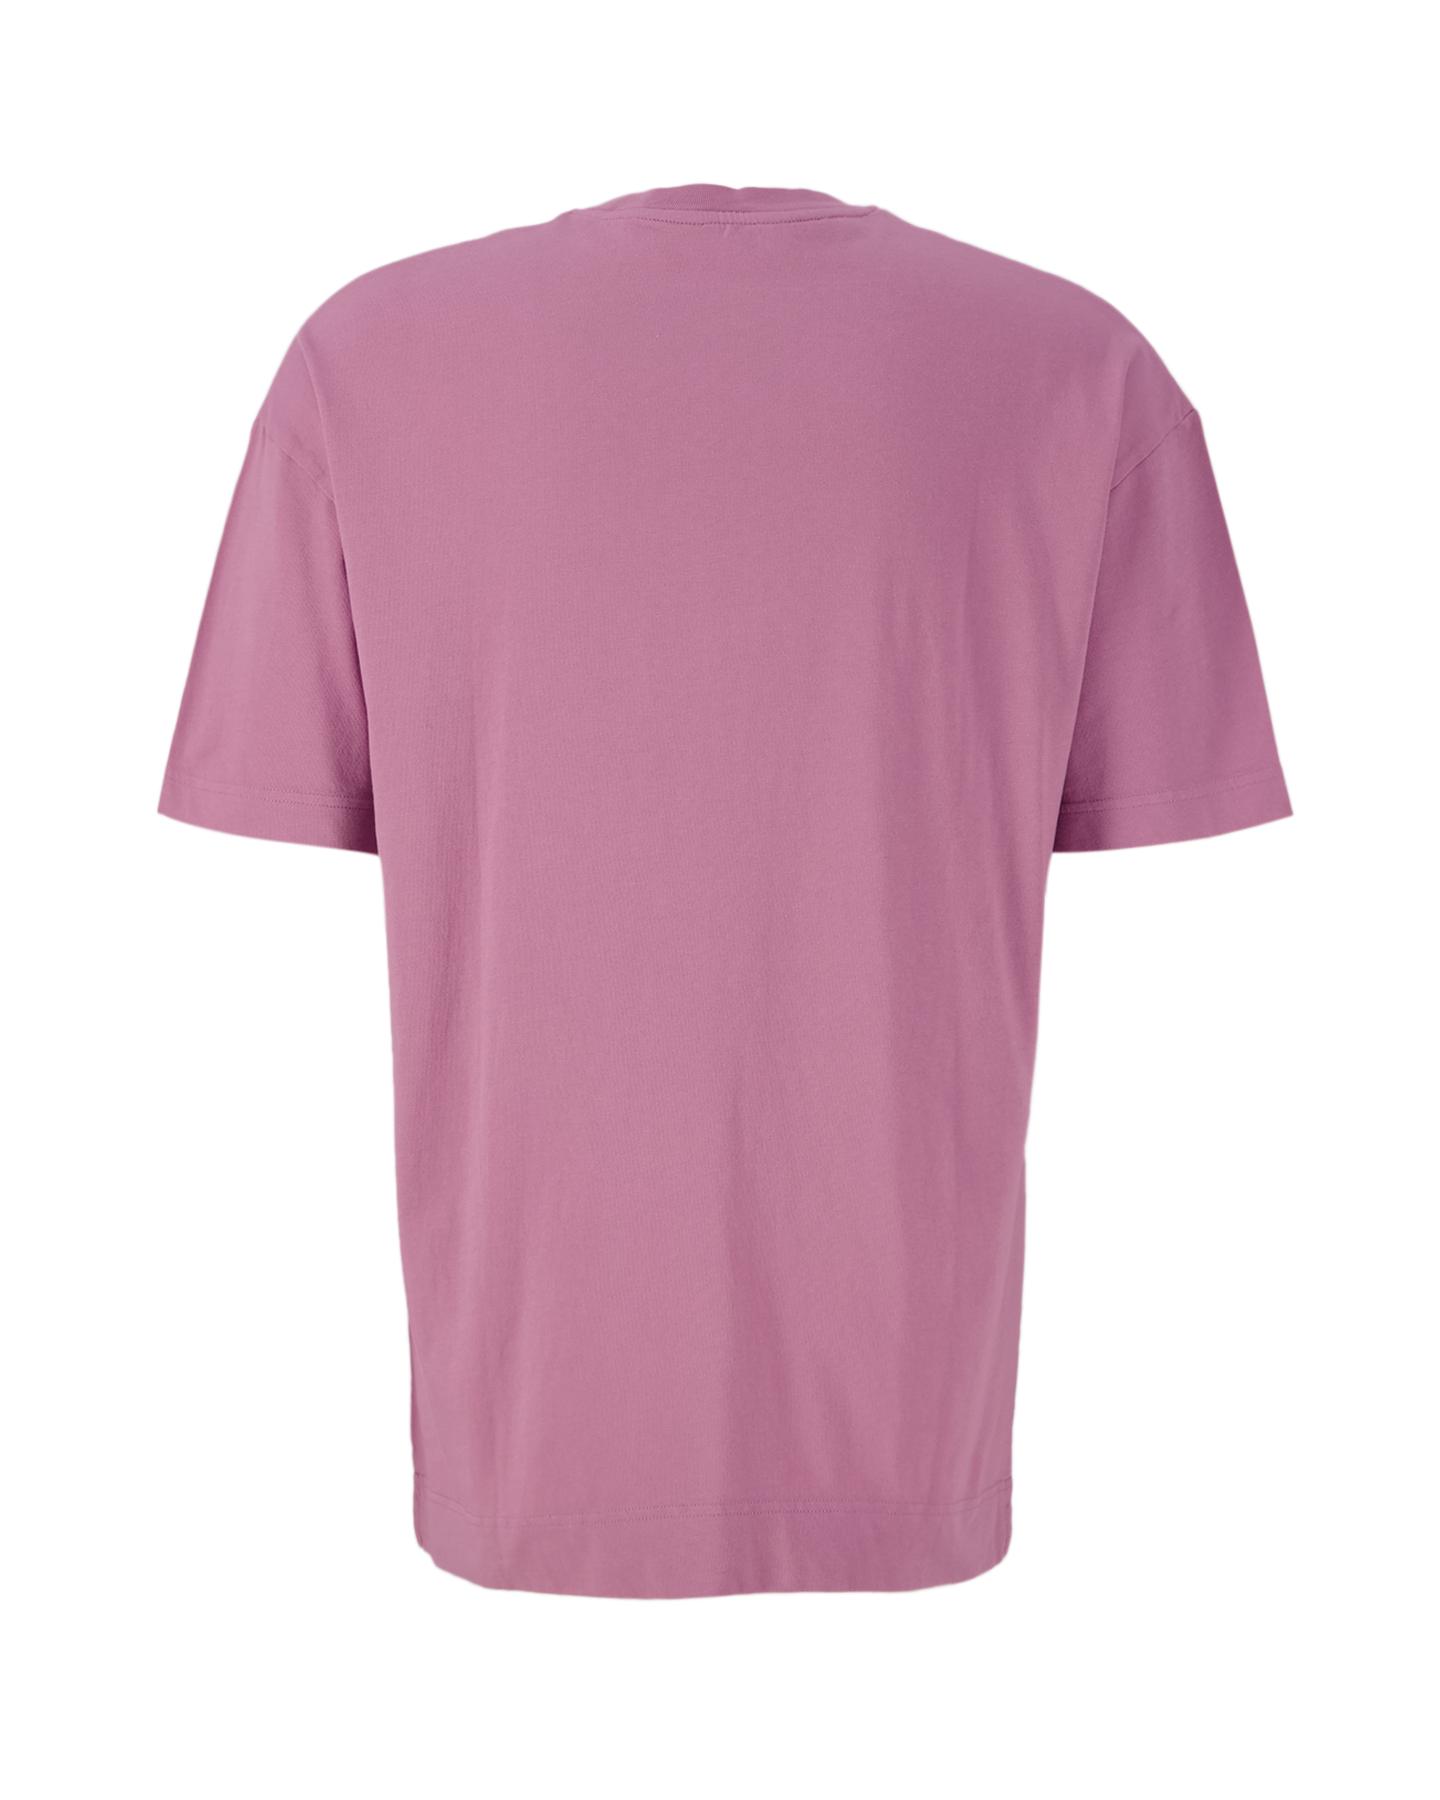 Samsøe Samsøe Joel T-Shirt 11415 ROSE 2